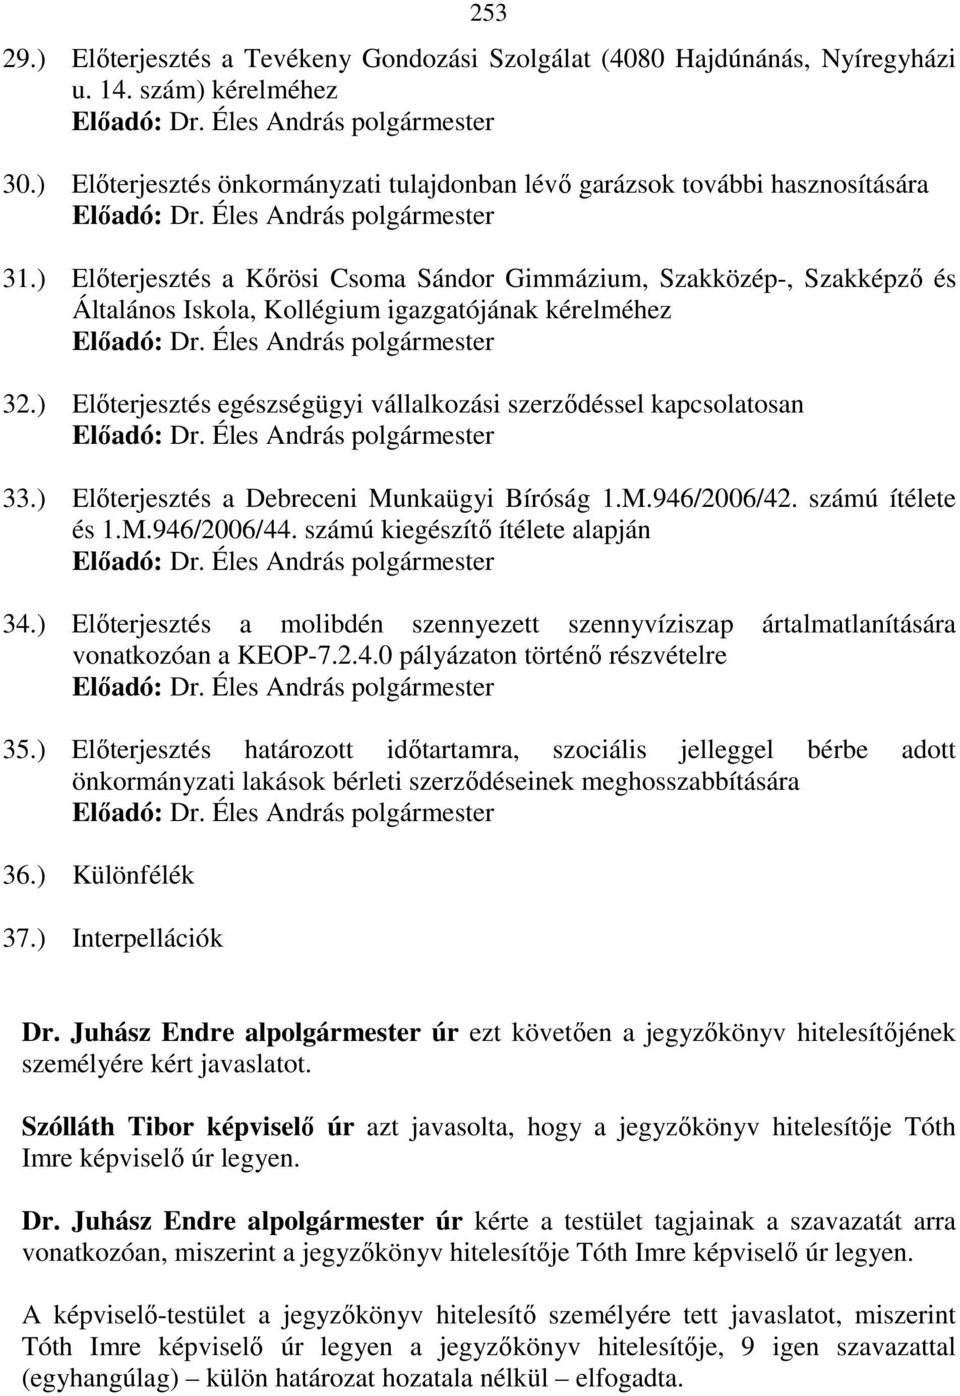 ) Elıterjesztés egészségügyi vállalkozási szerzıdéssel kapcsolatosan 33.) Elıterjesztés a Debreceni Munkaügyi Bíróság 1.M.946/2006/42. számú ítélete és 1.M.946/2006/44.